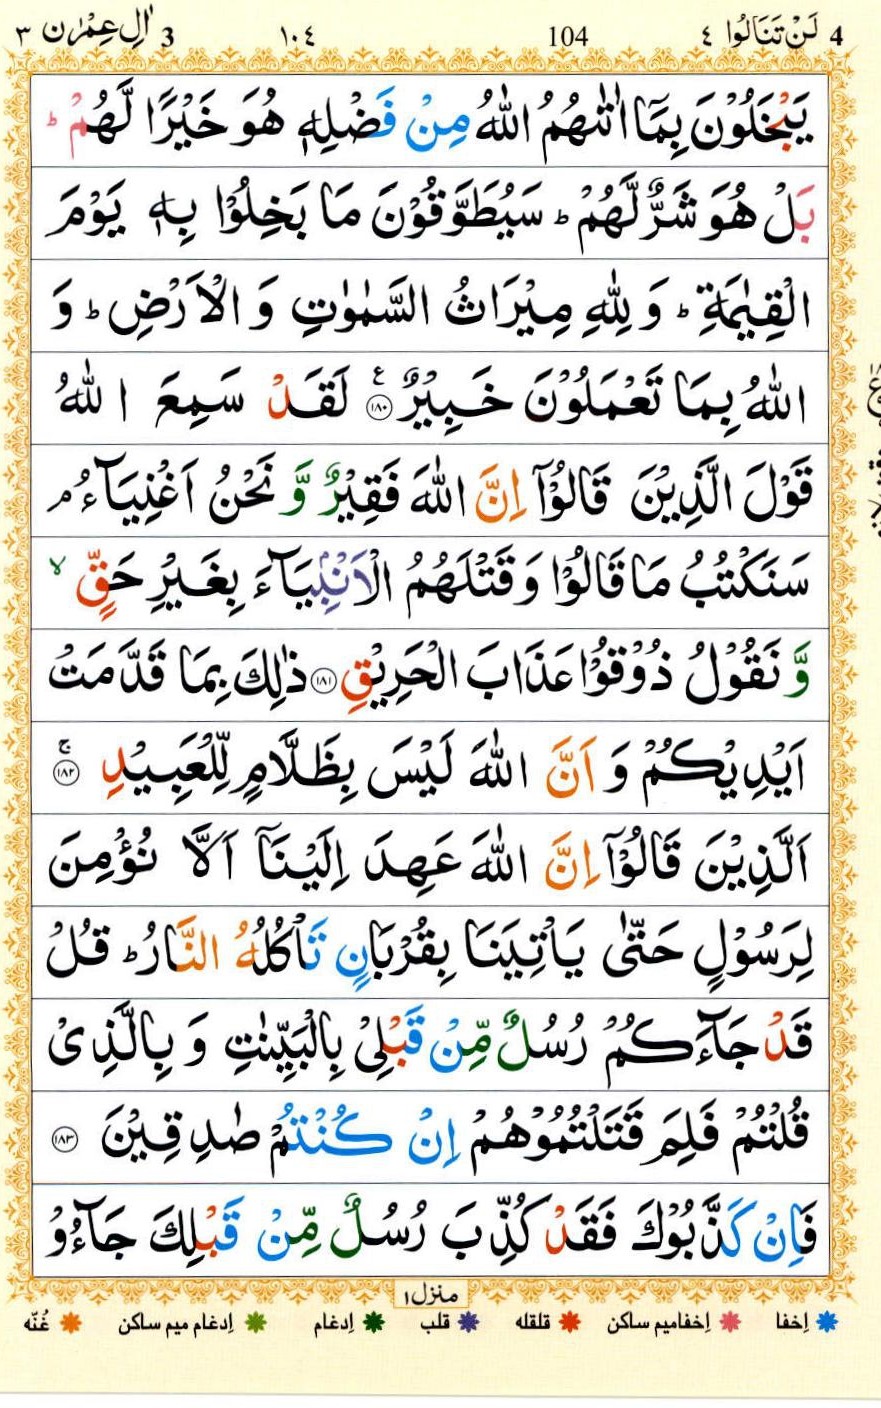 Surah Al Imran Transliteration